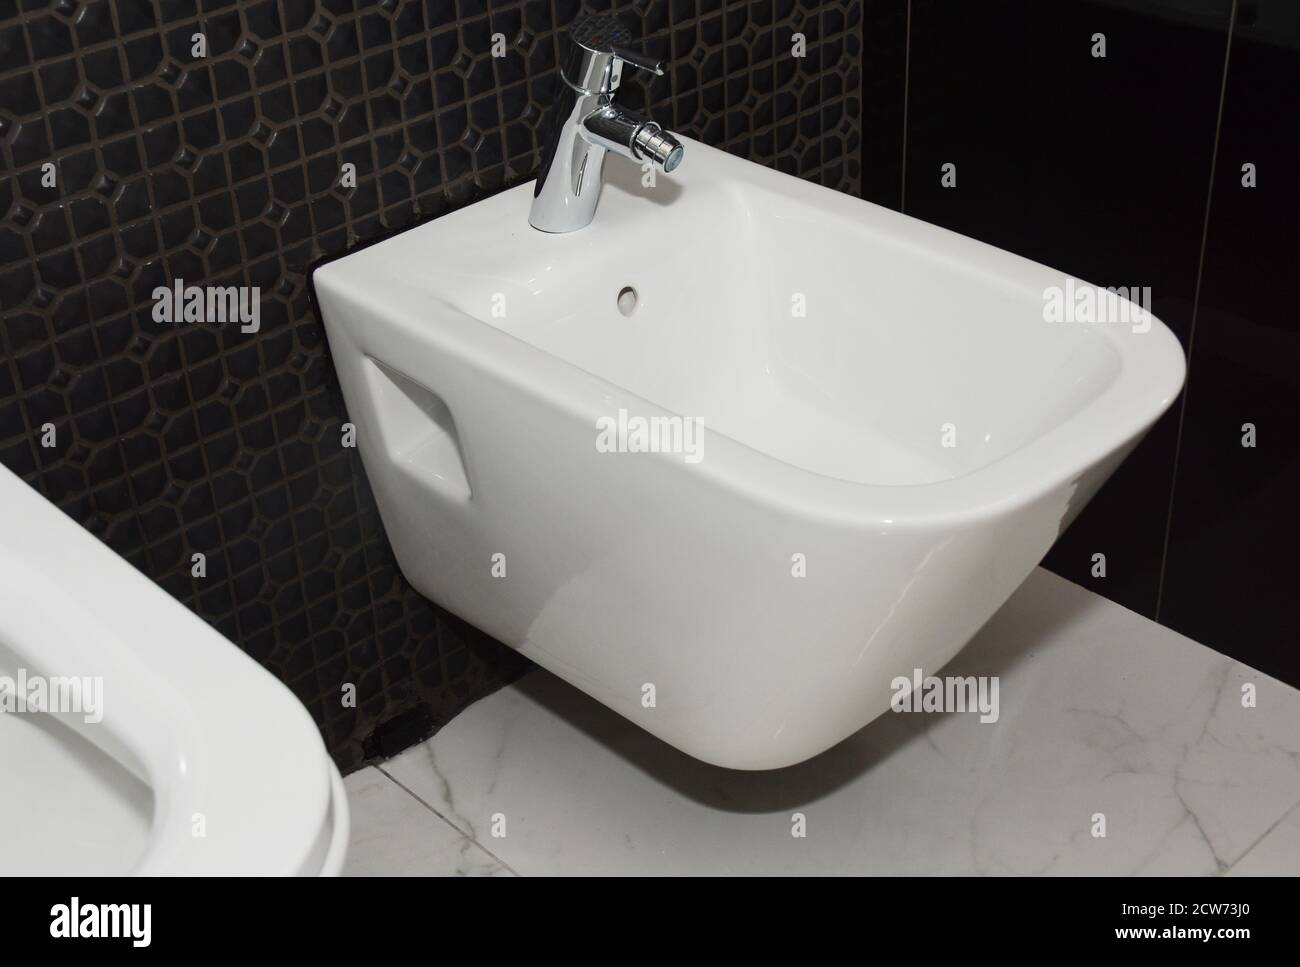 Eine Nahaufnahme auf Keramik einteilige Wand hing Frauen sauber, feminine Hygiene Bidet WC auf einem schwarzen Mosaik gefliesten Wand installiert. Stockfoto